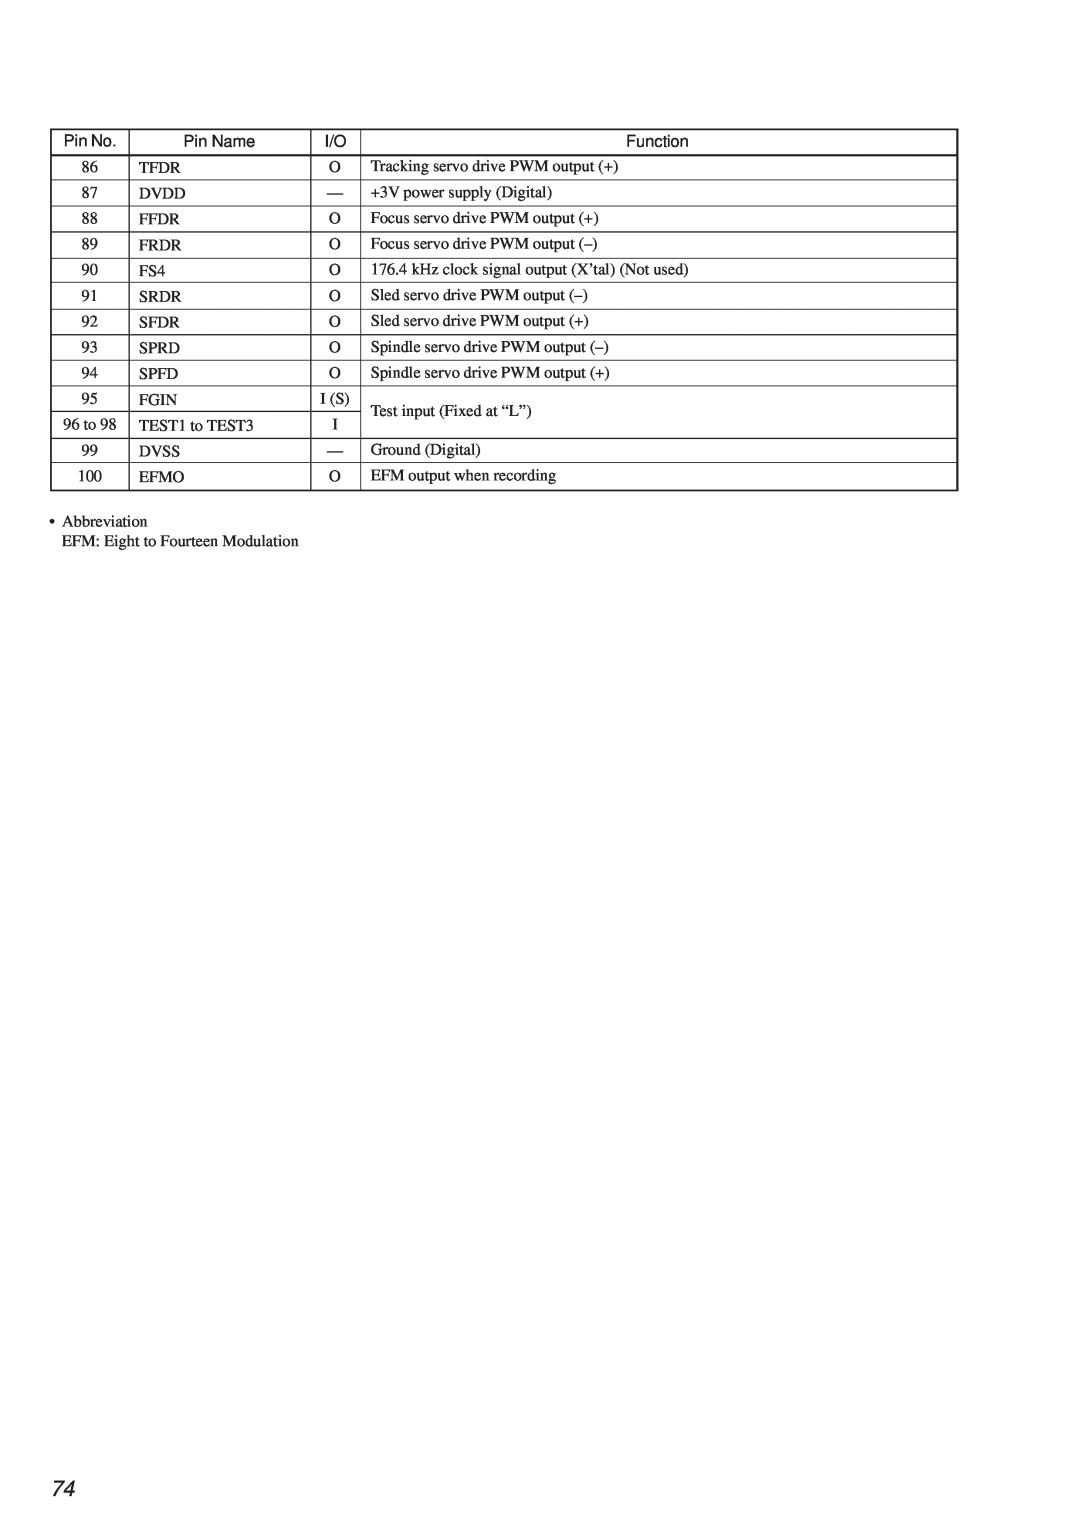 Sony HCD-MD373 service manual Tfdr 